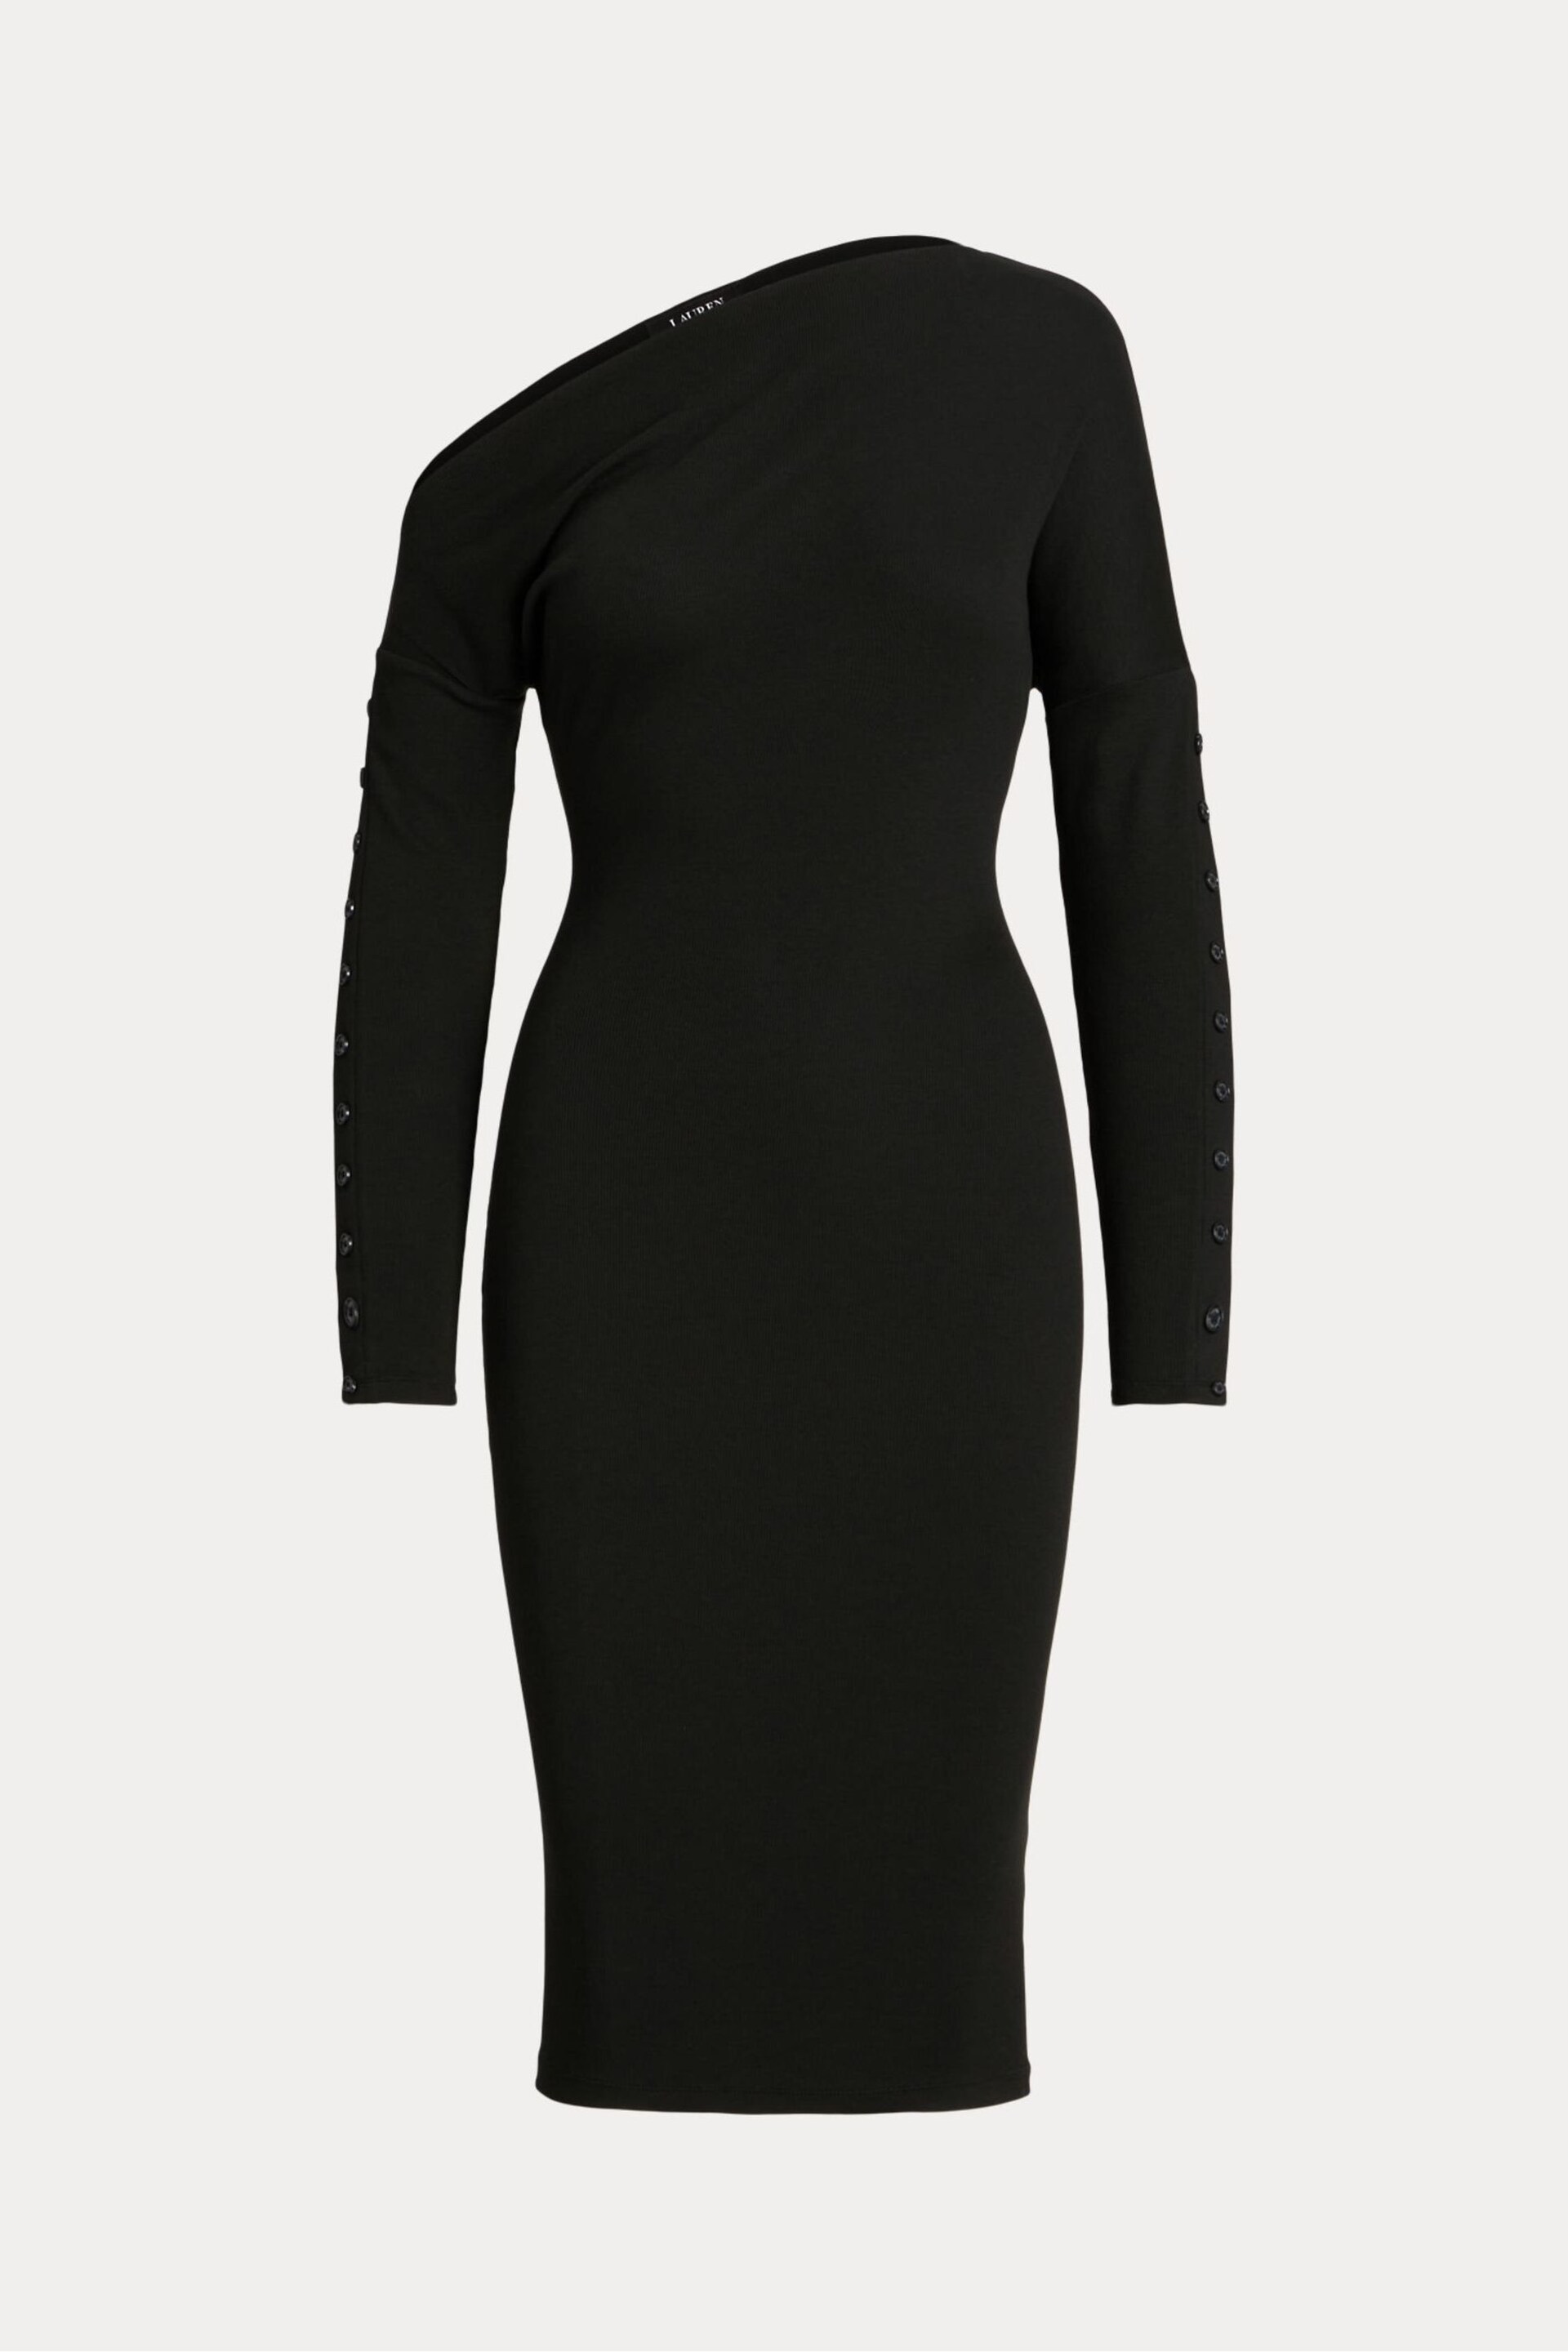 Lauren Ralph Lauren Black Yaslee Dress - Image 9 of 9